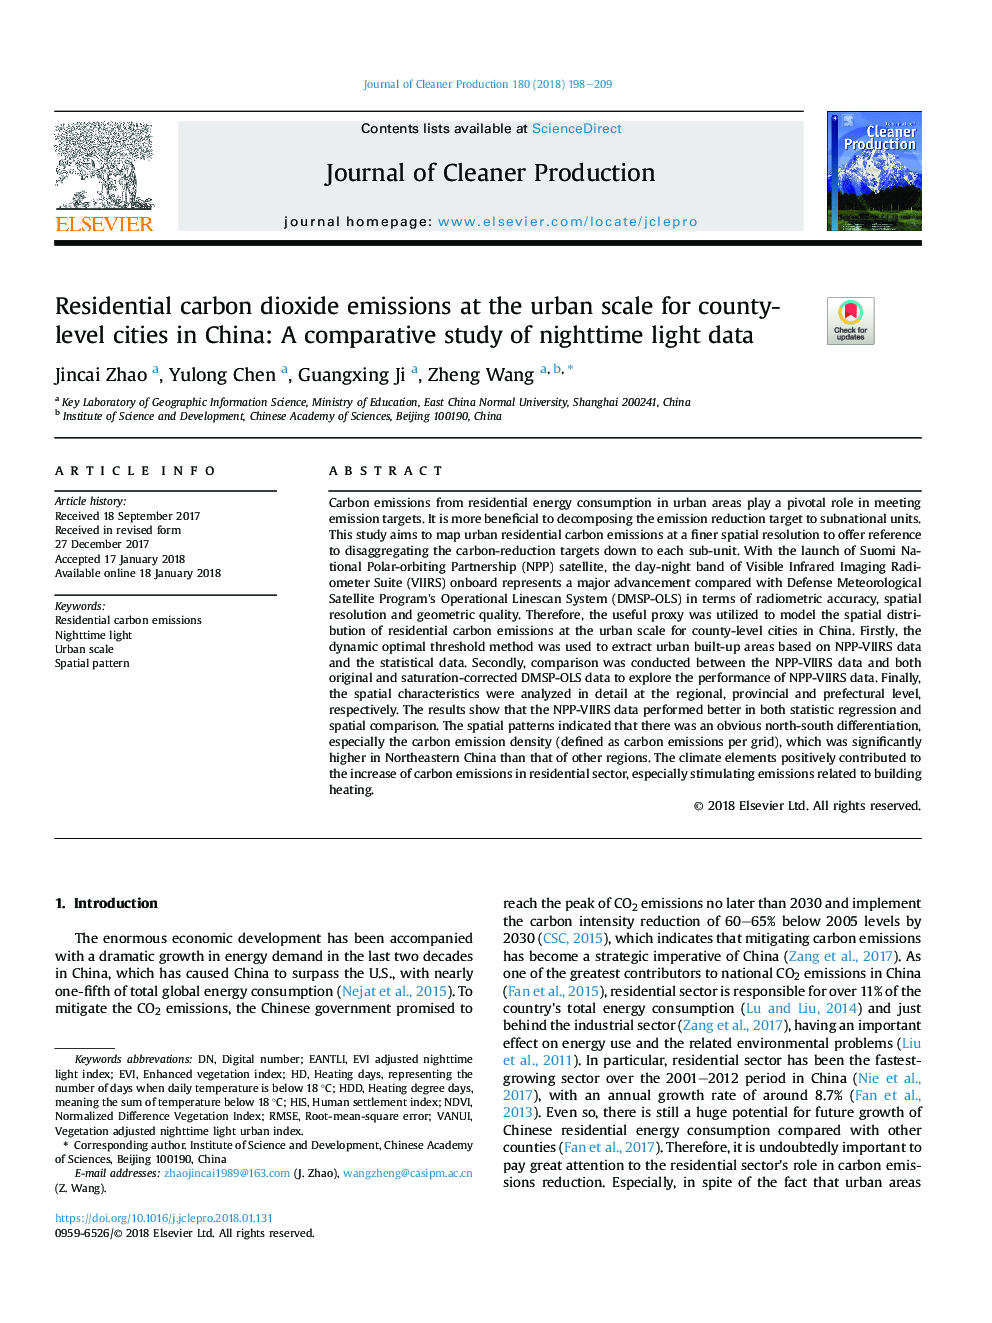 انتشار گاز دی اکسید کربن مسکونی در مقیاس شهری برای شهرستانها در شهرستانها در چین: مطالعه مقایسه ای از داده های نور شب 